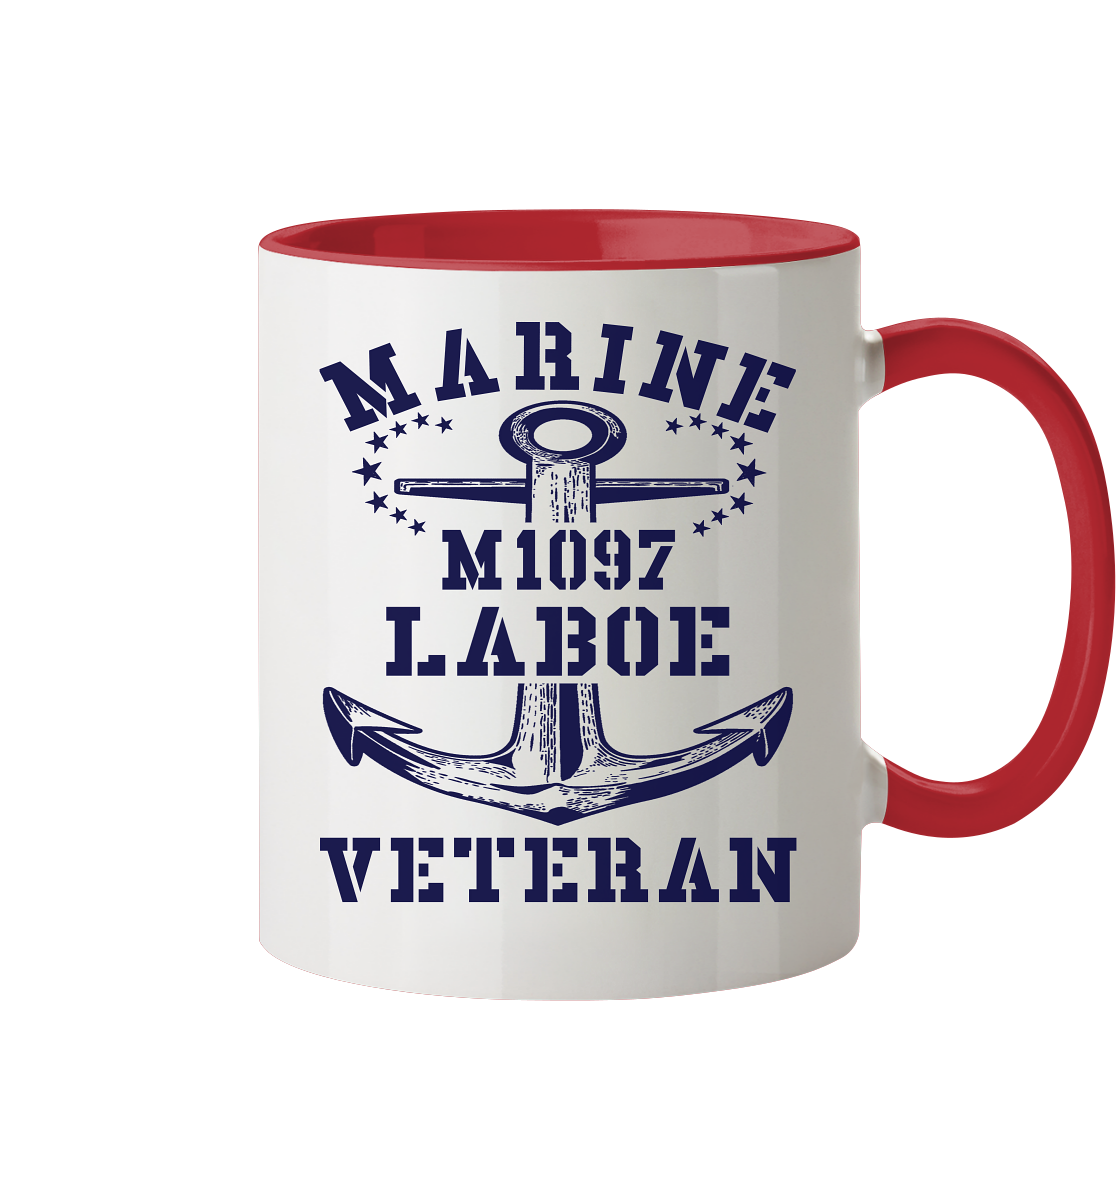 M1097 LABOE Marine Veteran - Tasse zweifarbig